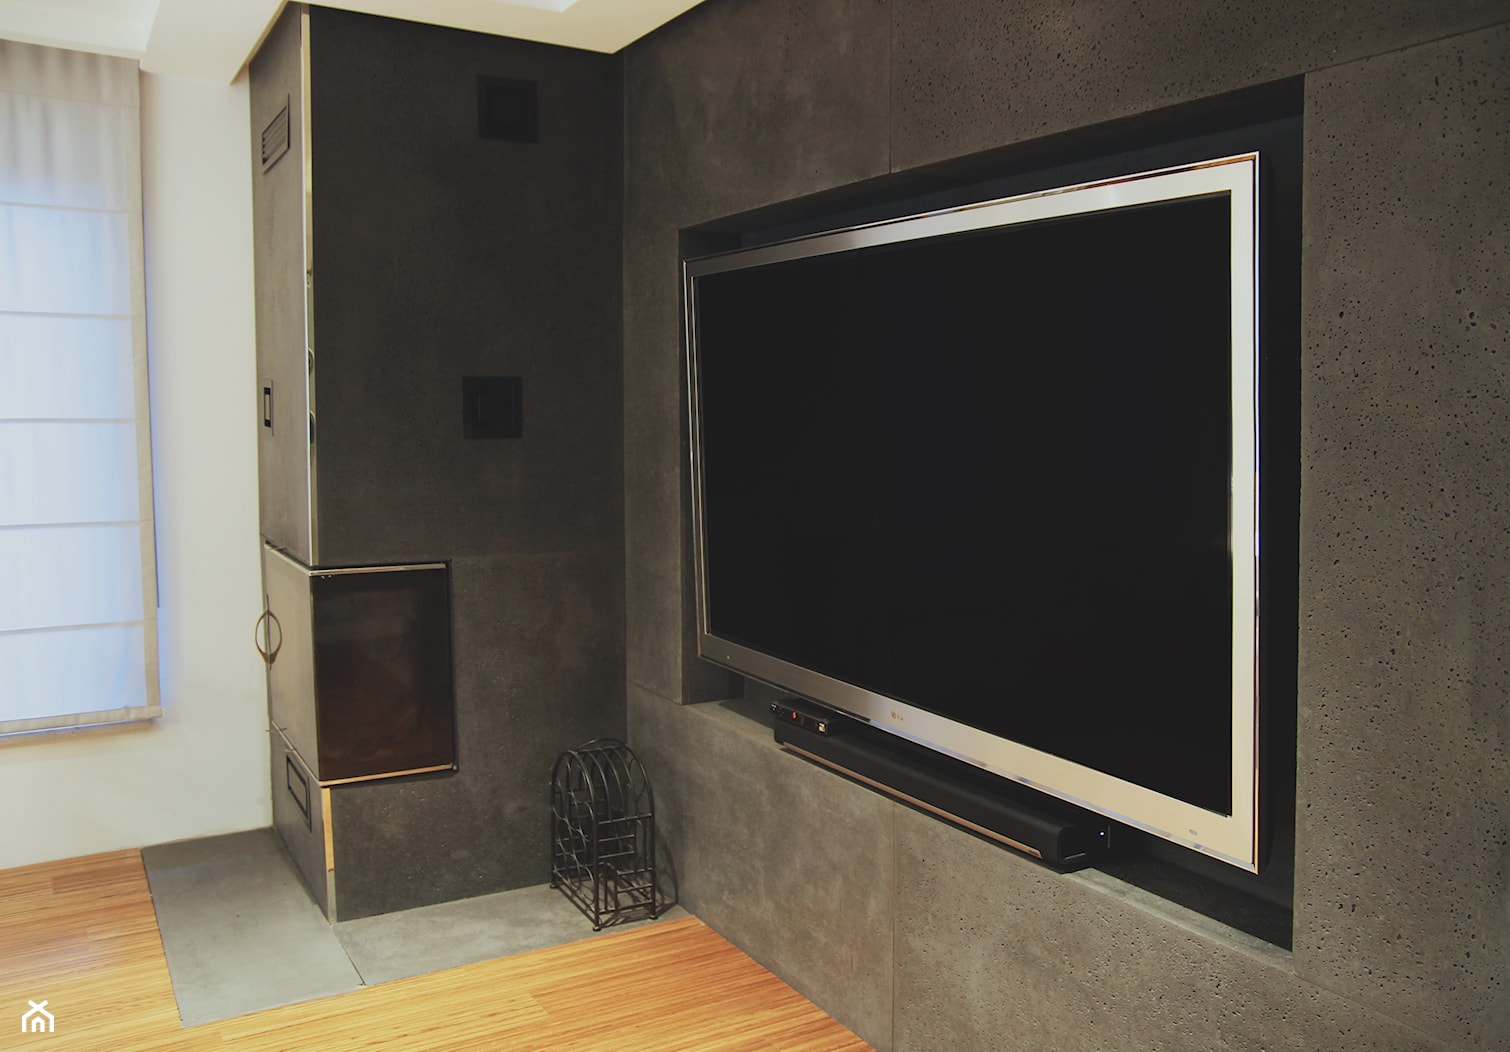 Obudowa kominka wraz z ścianą telewizyjną. - zdjęcie od Slabb - Beton architektoniczny - Homebook